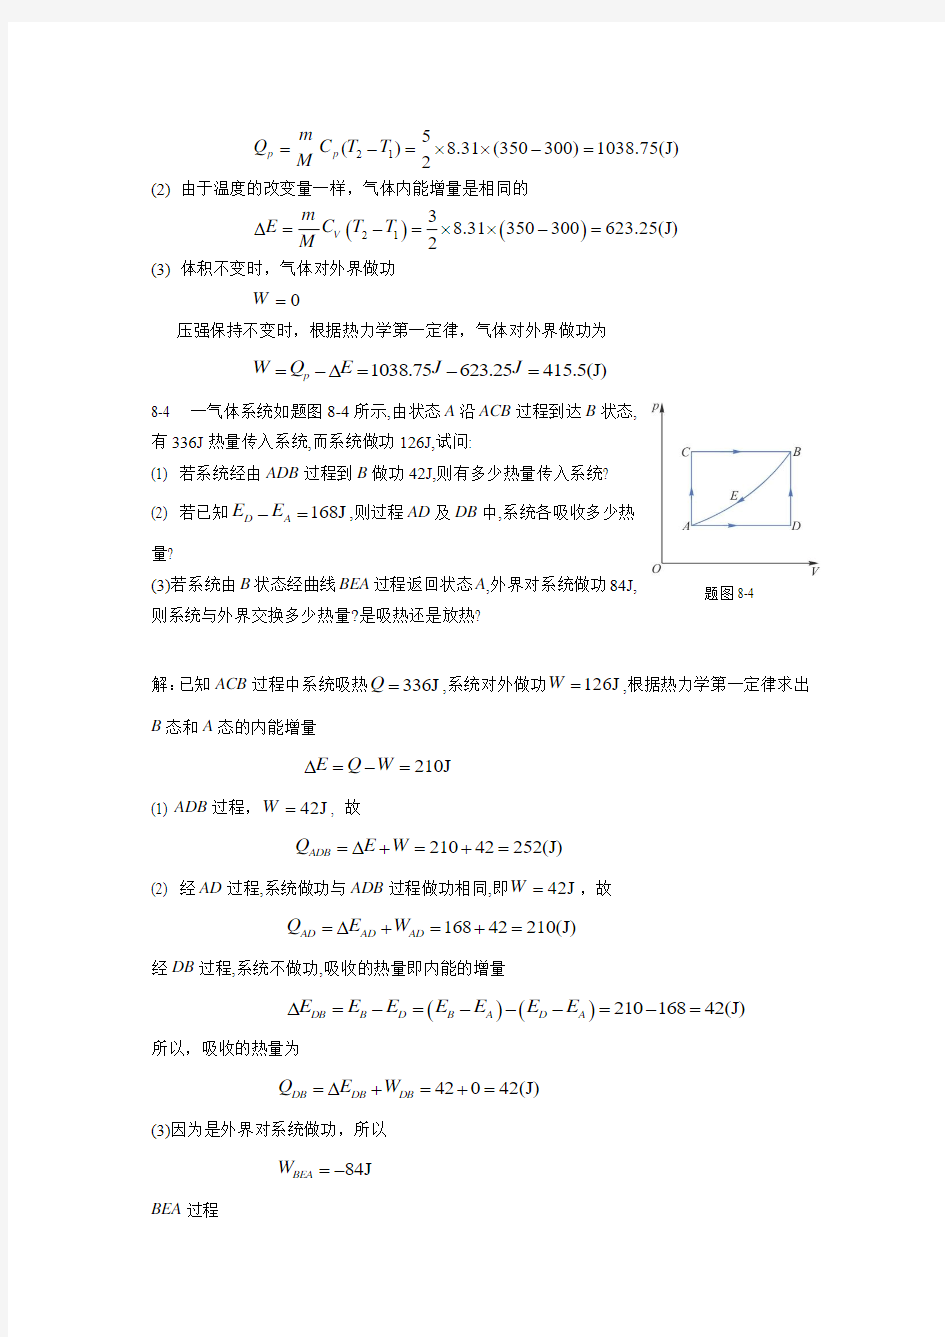 新编基础物理学王少杰第二版第八章习题解答